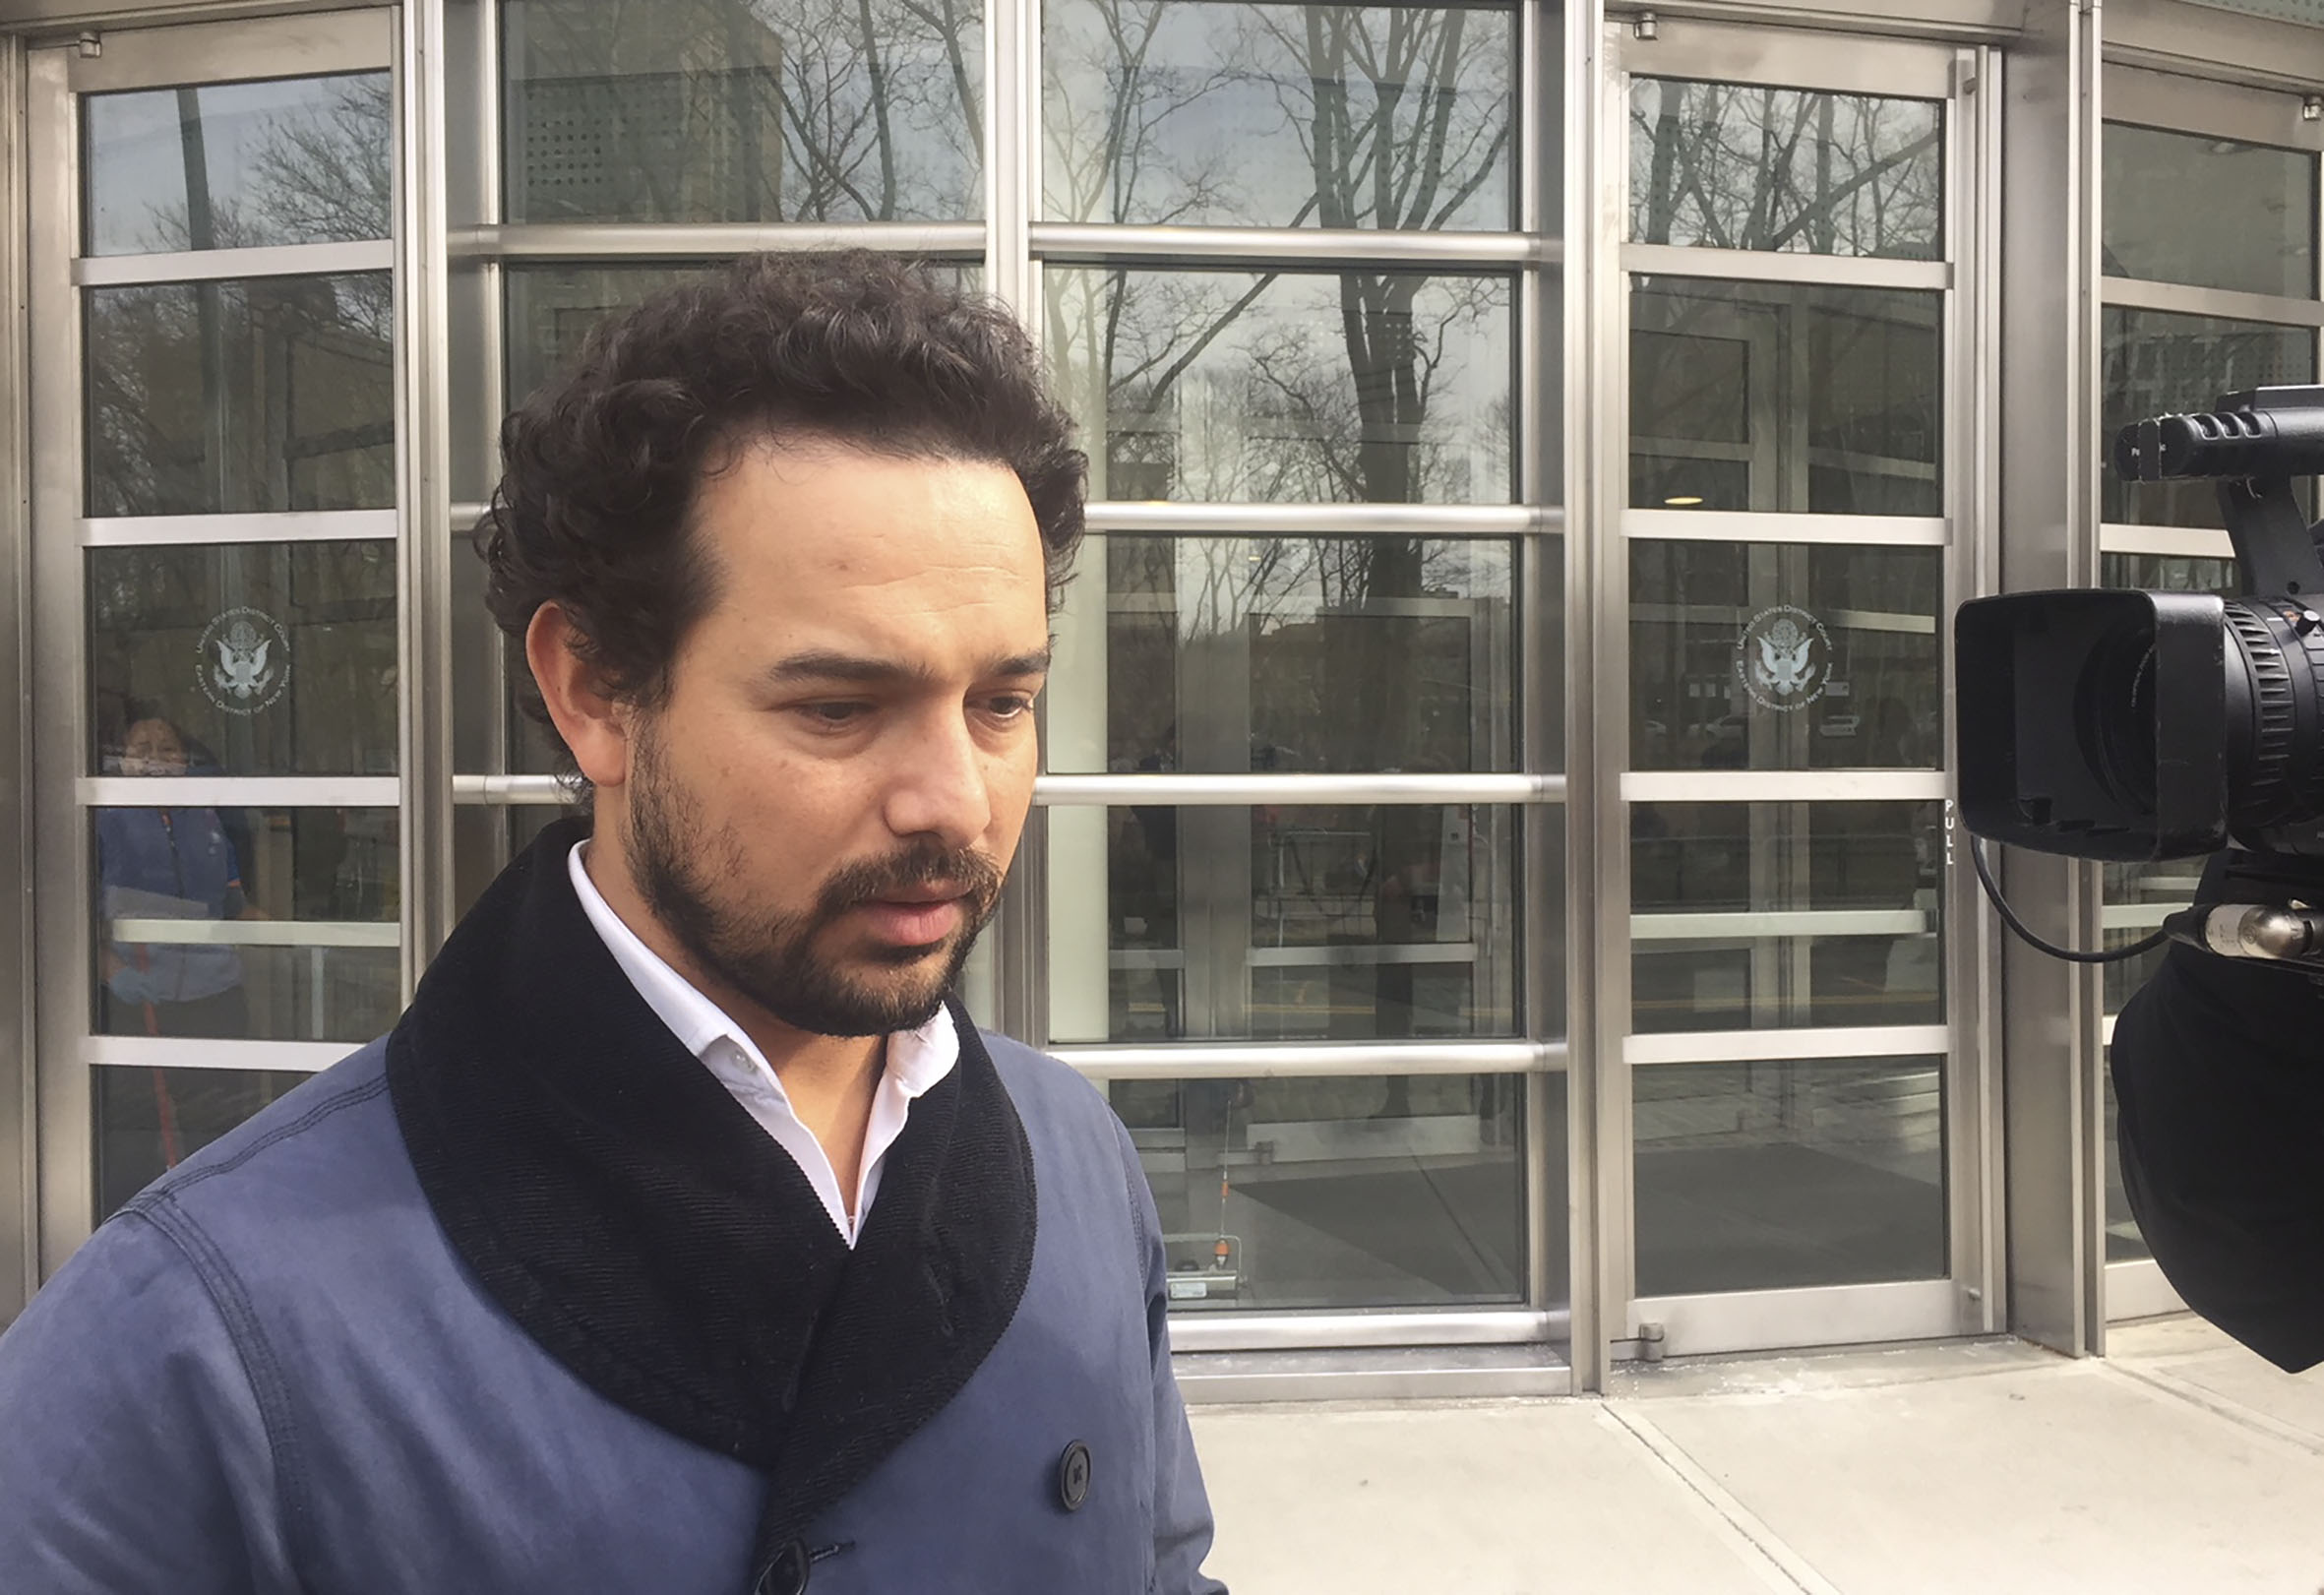 Actor que interpretó a El Chapo en la serie “Narcos” se encontró con Guzmán en el juicio